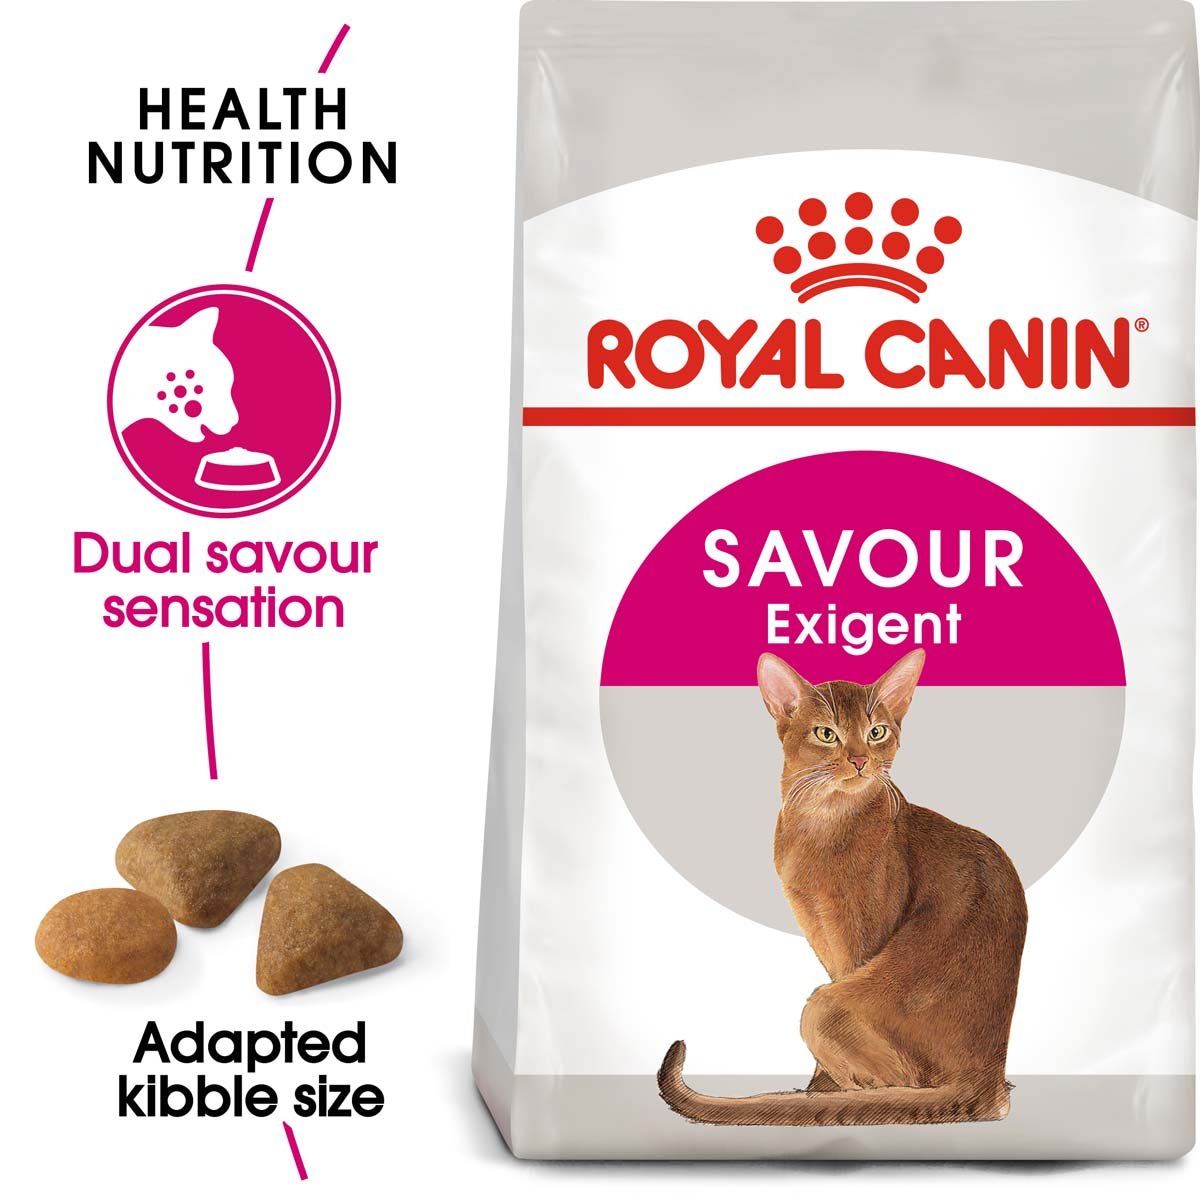 ROYAL CANIN SAVOUR EXIGENT Trockenfutter für wählerische Katzen 2x10kg von Royal Canin